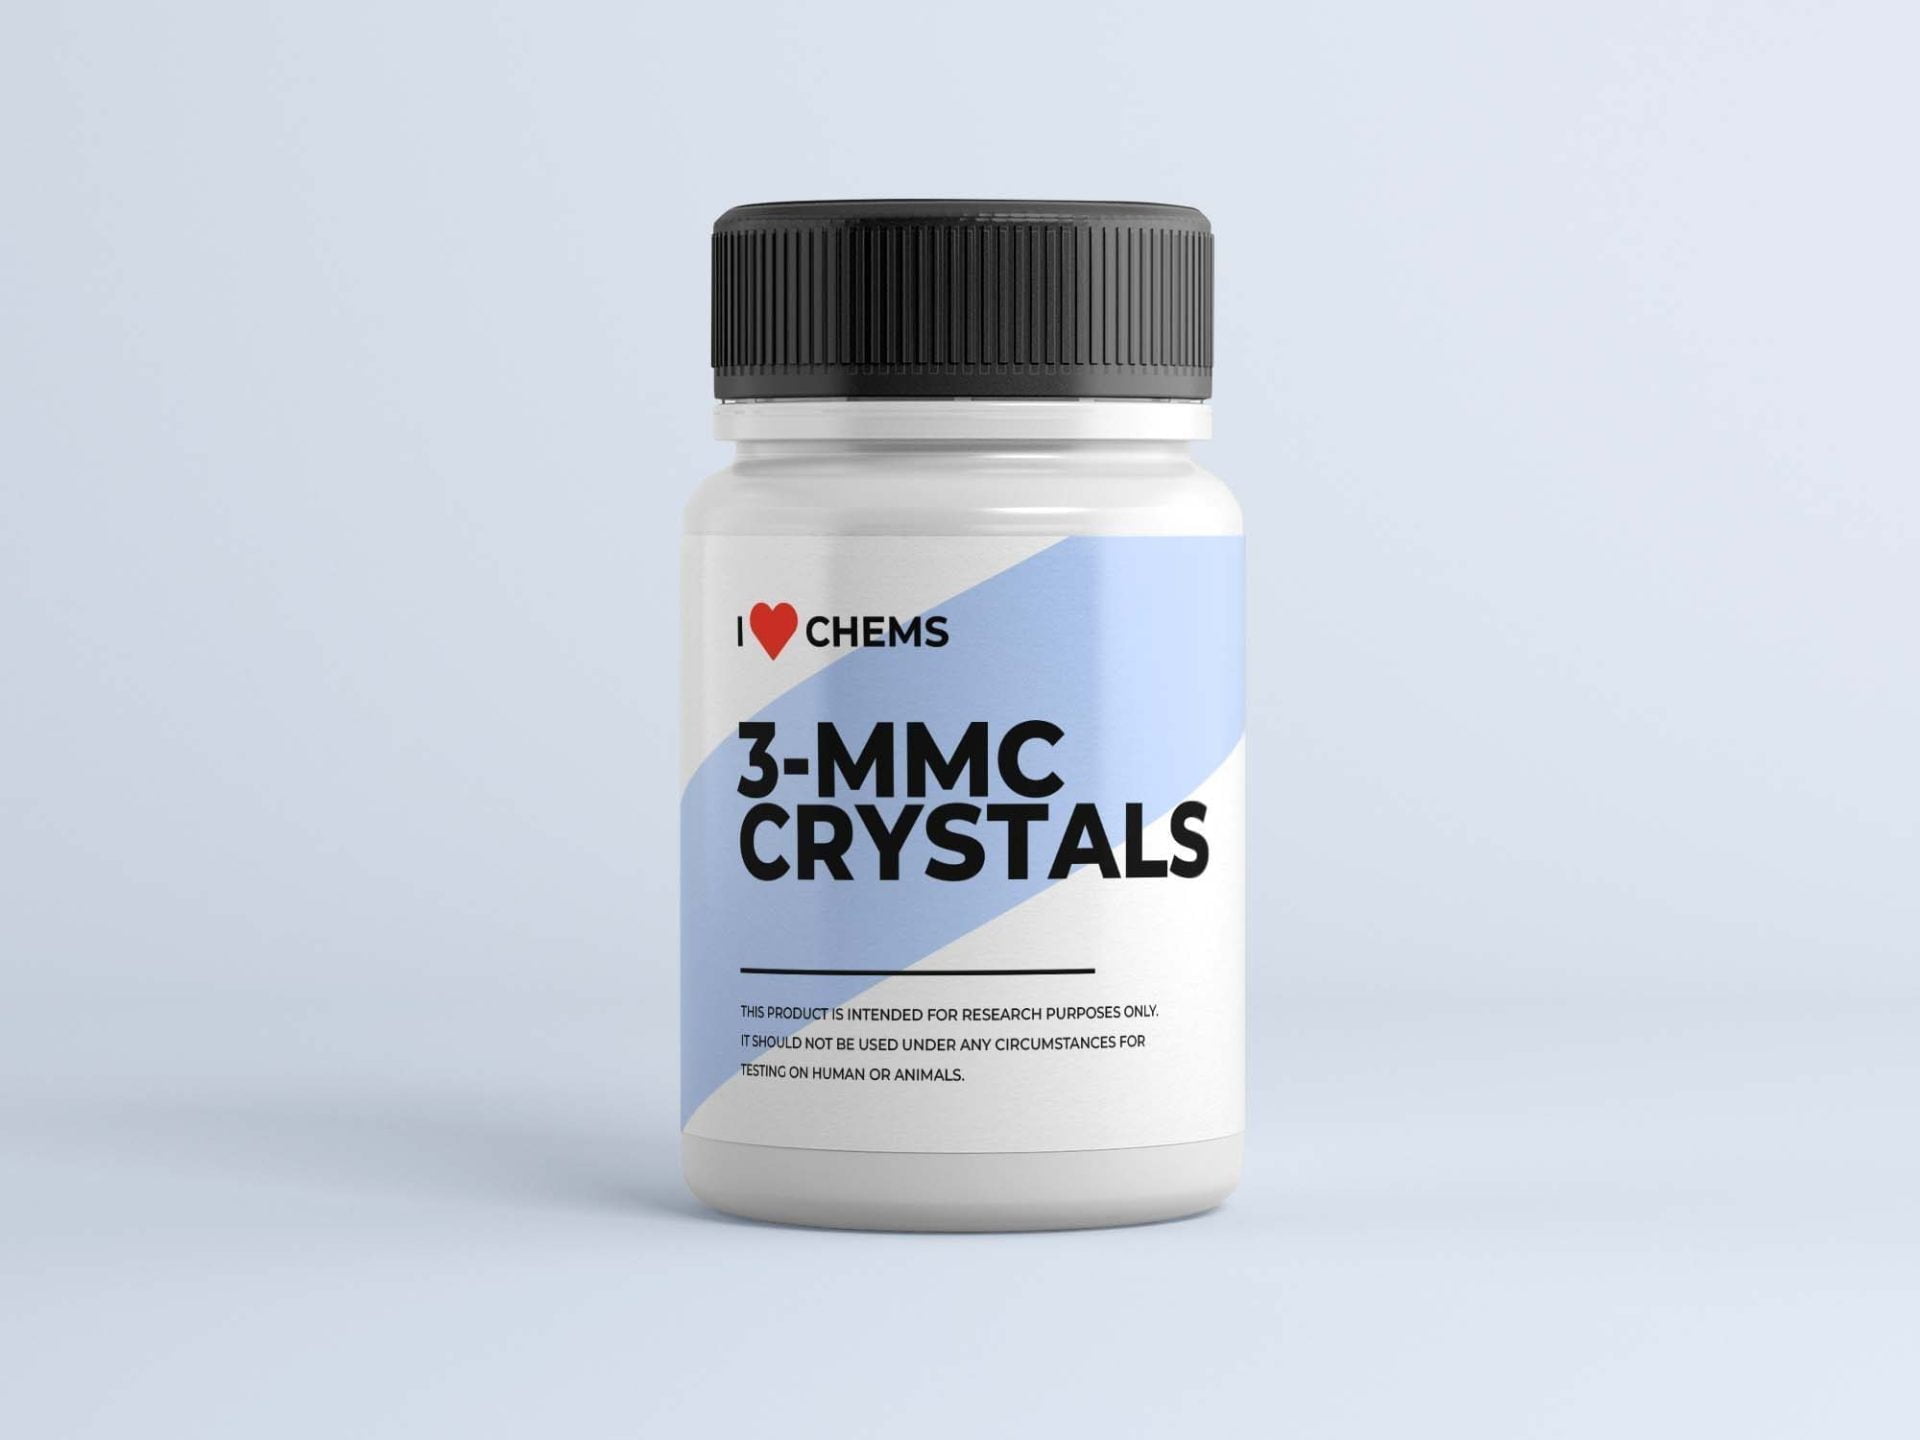 Køb 3 MMC-krystaller hos I Love Chems. 3 MMC Shop i EU. Pålidelig RC-leverandør